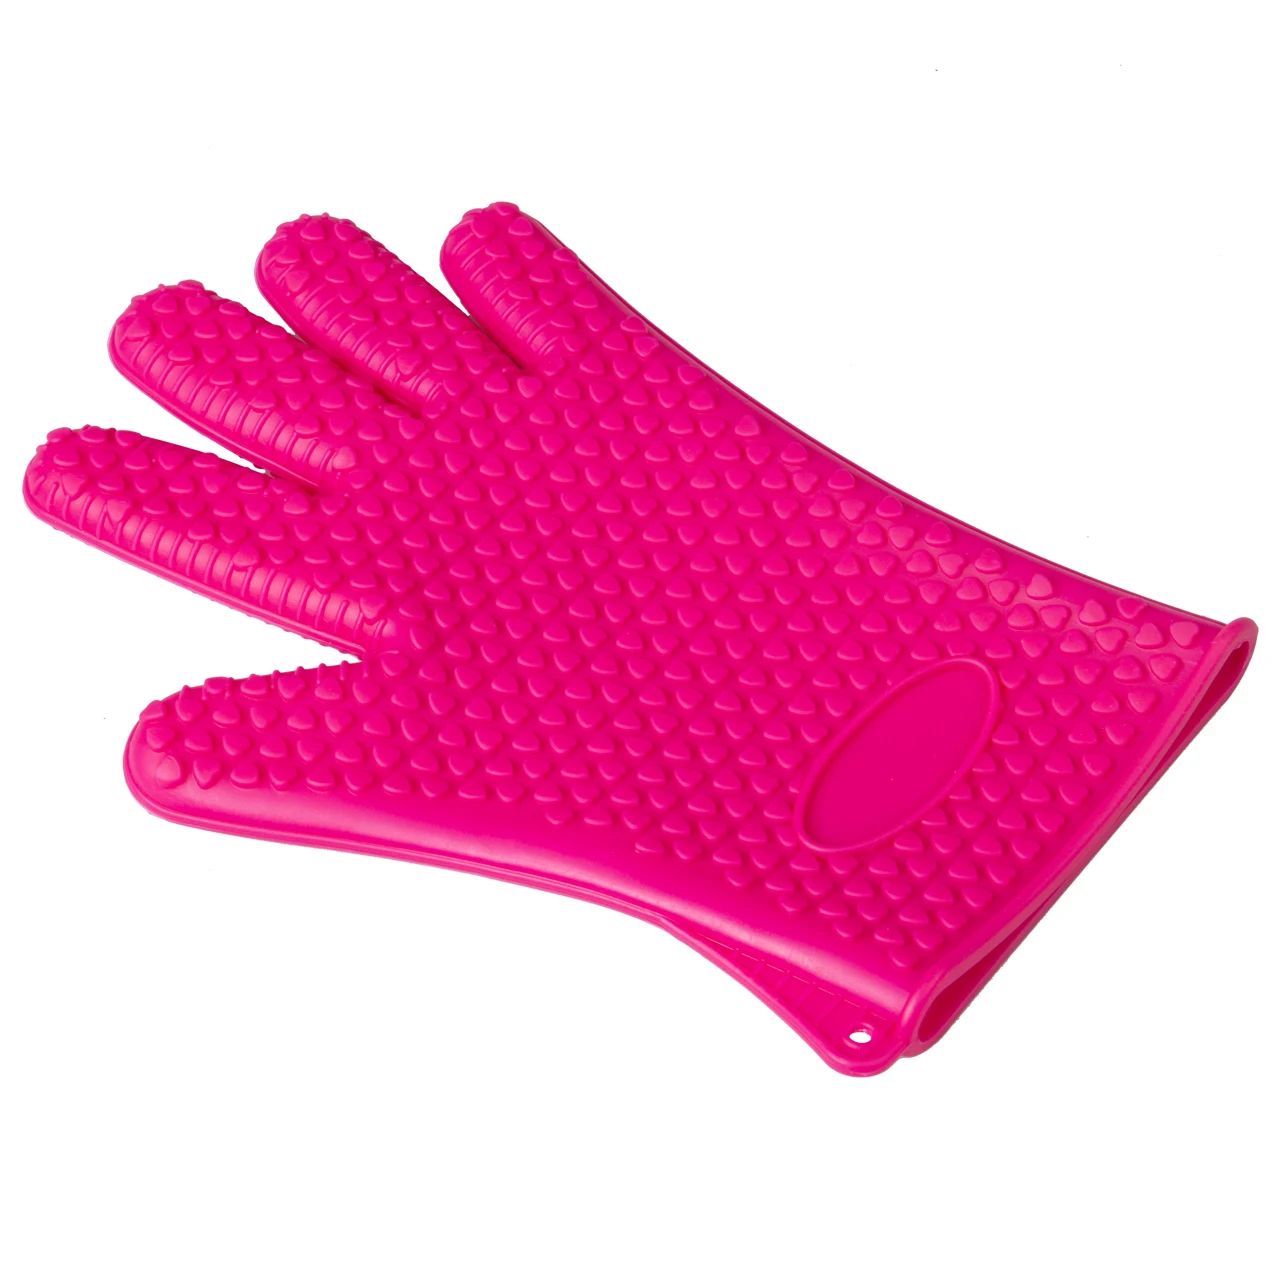 1 шт. перчатки для кухонной печи термостойкие силиконовые держатели для выпечки барбекю поварские рукавицы - Цвет: Арбузно-красный